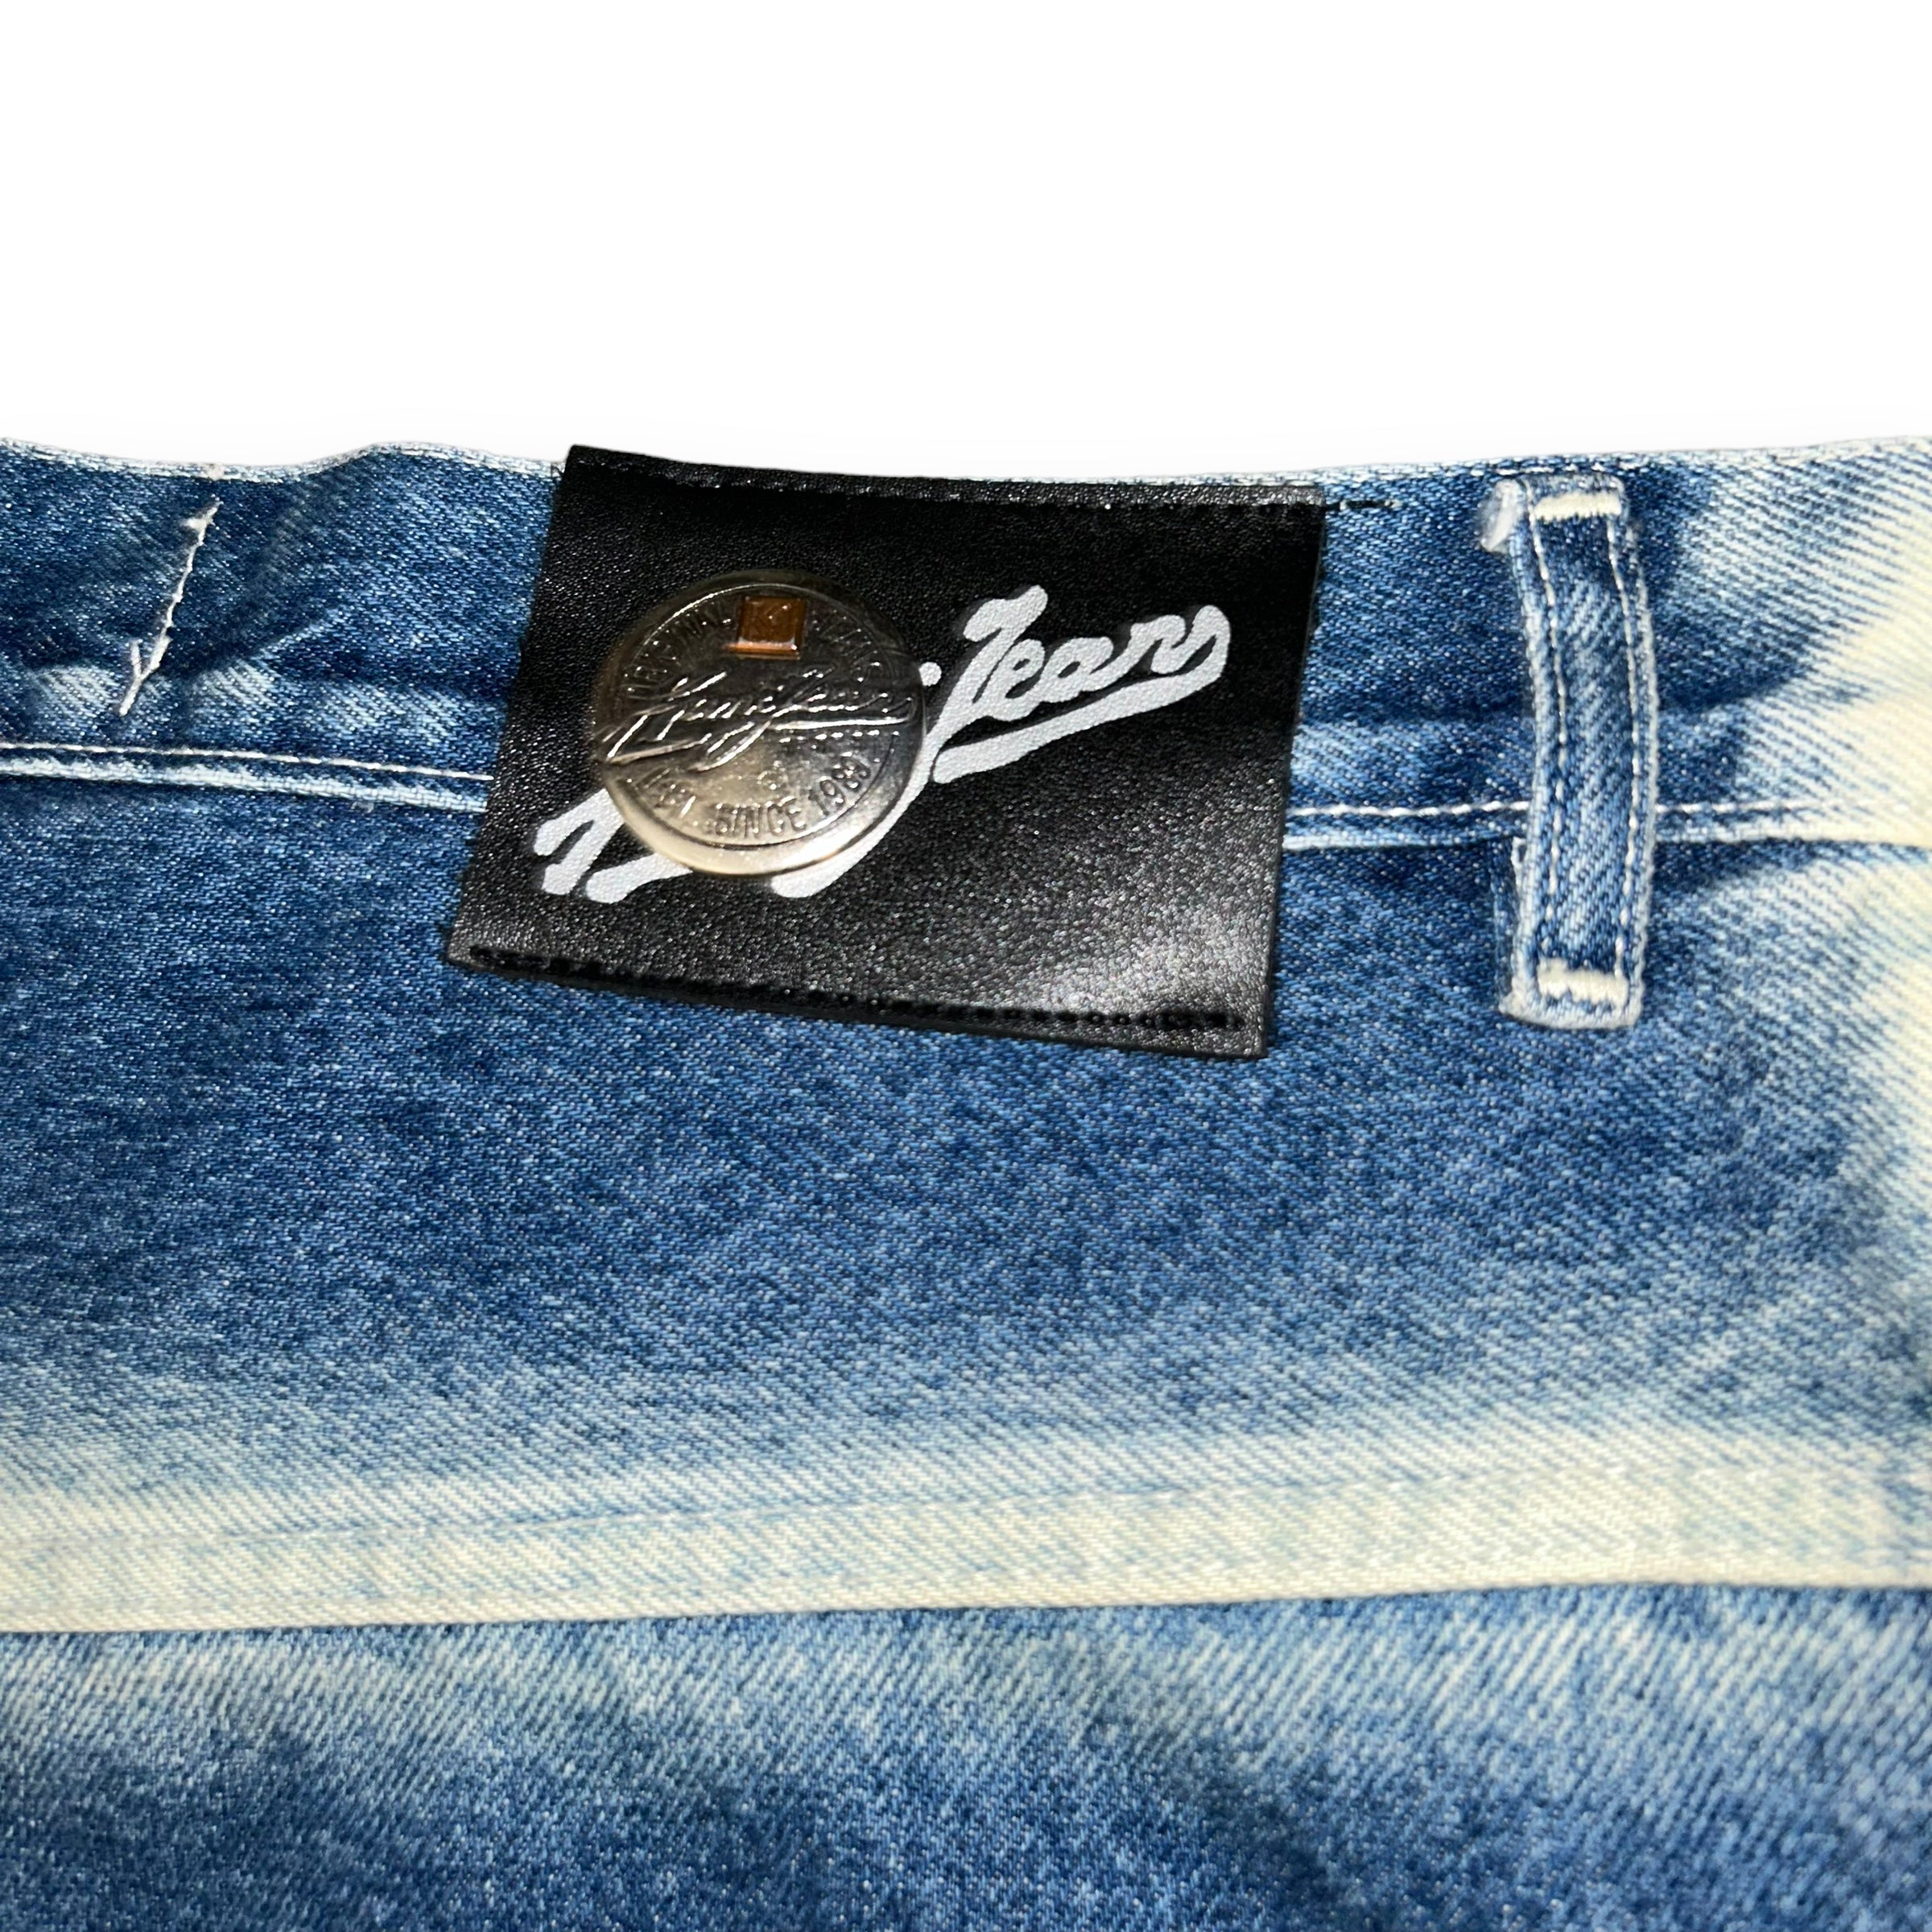 Baggy jeans Karl Kani Vintage  (37 USA  XL/XXL)